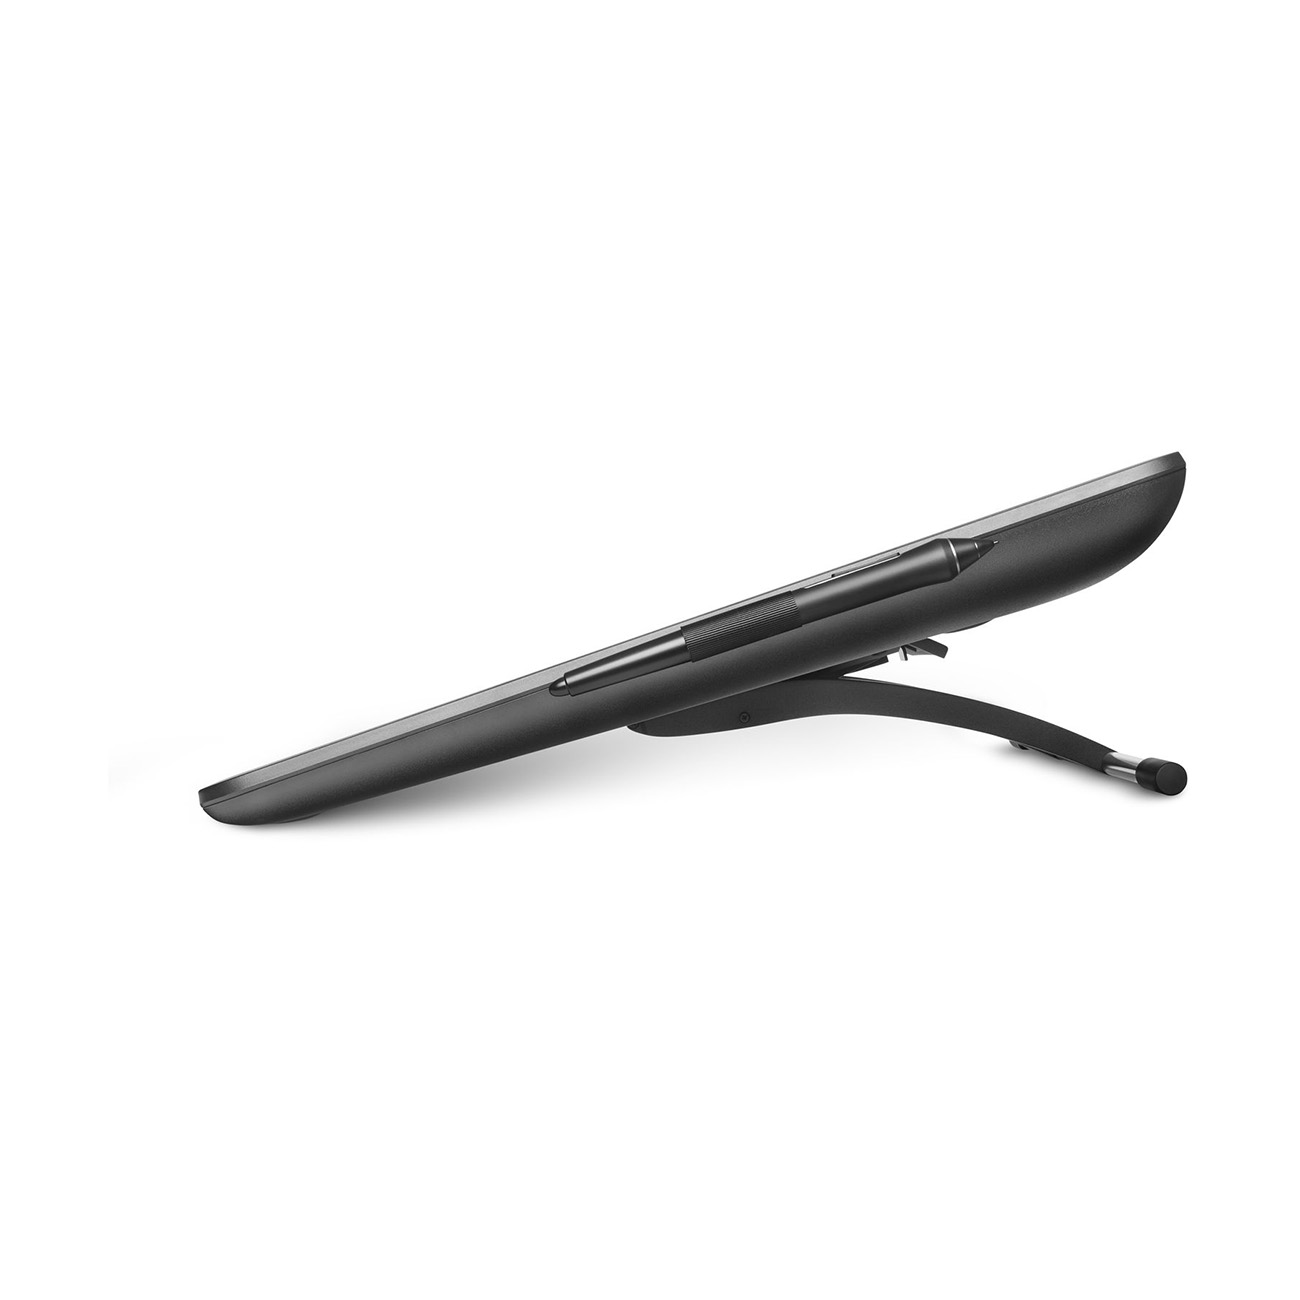 [สินค้าตัวโชว์ ไม่มีตำหนิ] Wacom Cintiq 22 Creative Pen Display (DTK-2260)- ClearanceSale